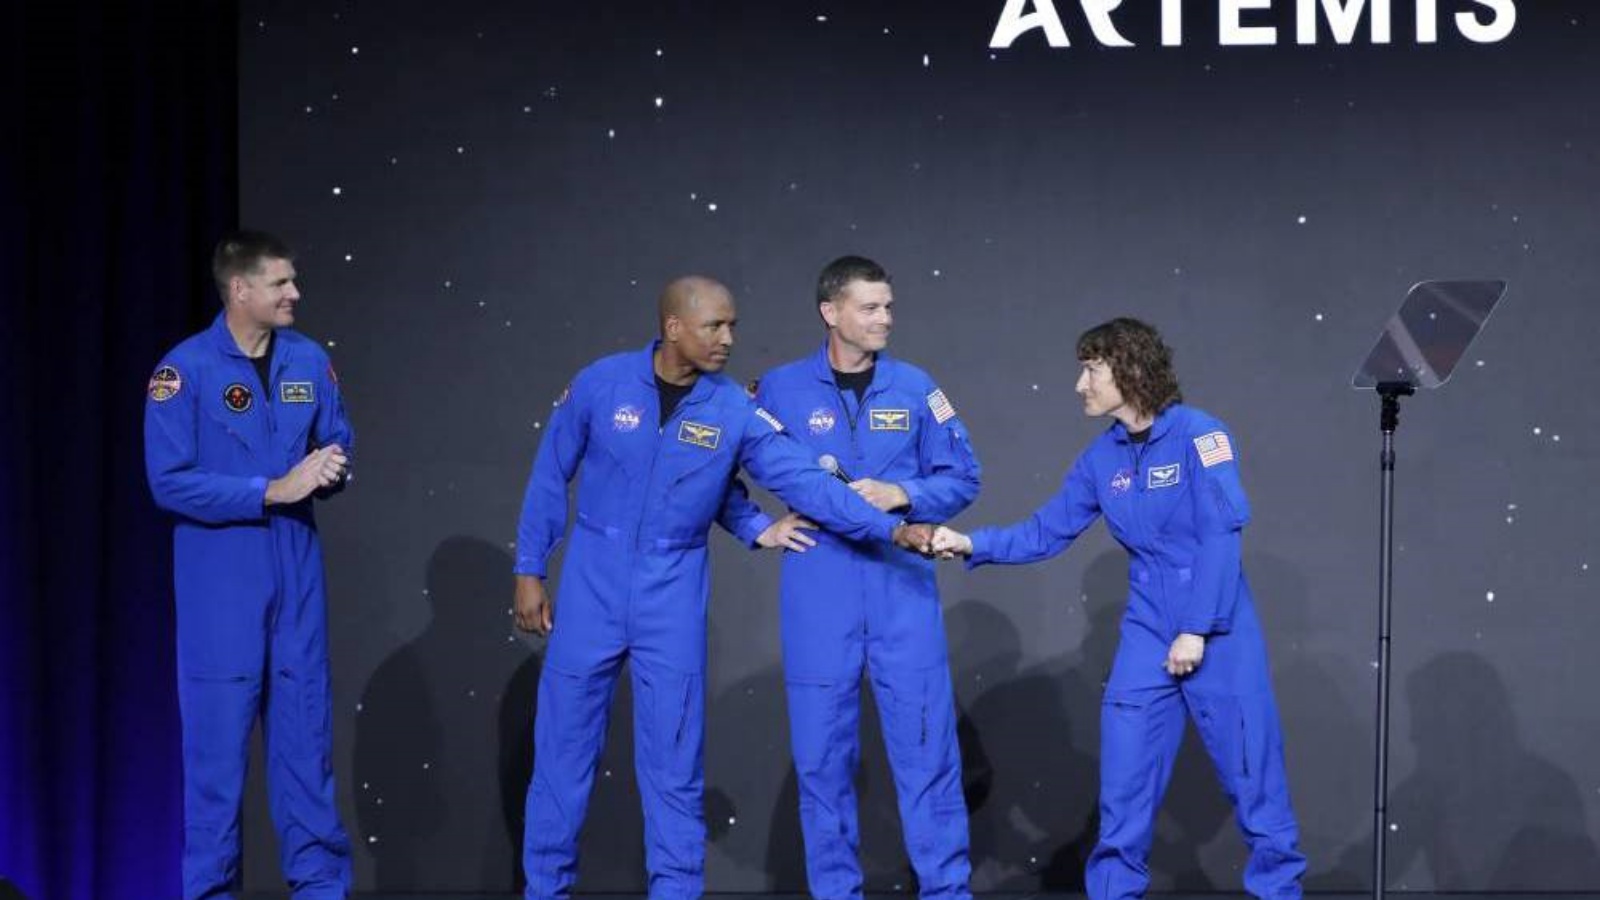 رواد الفضاء الأربعة الذين سيشاركون في مهمة حول القمر نهاية 2024